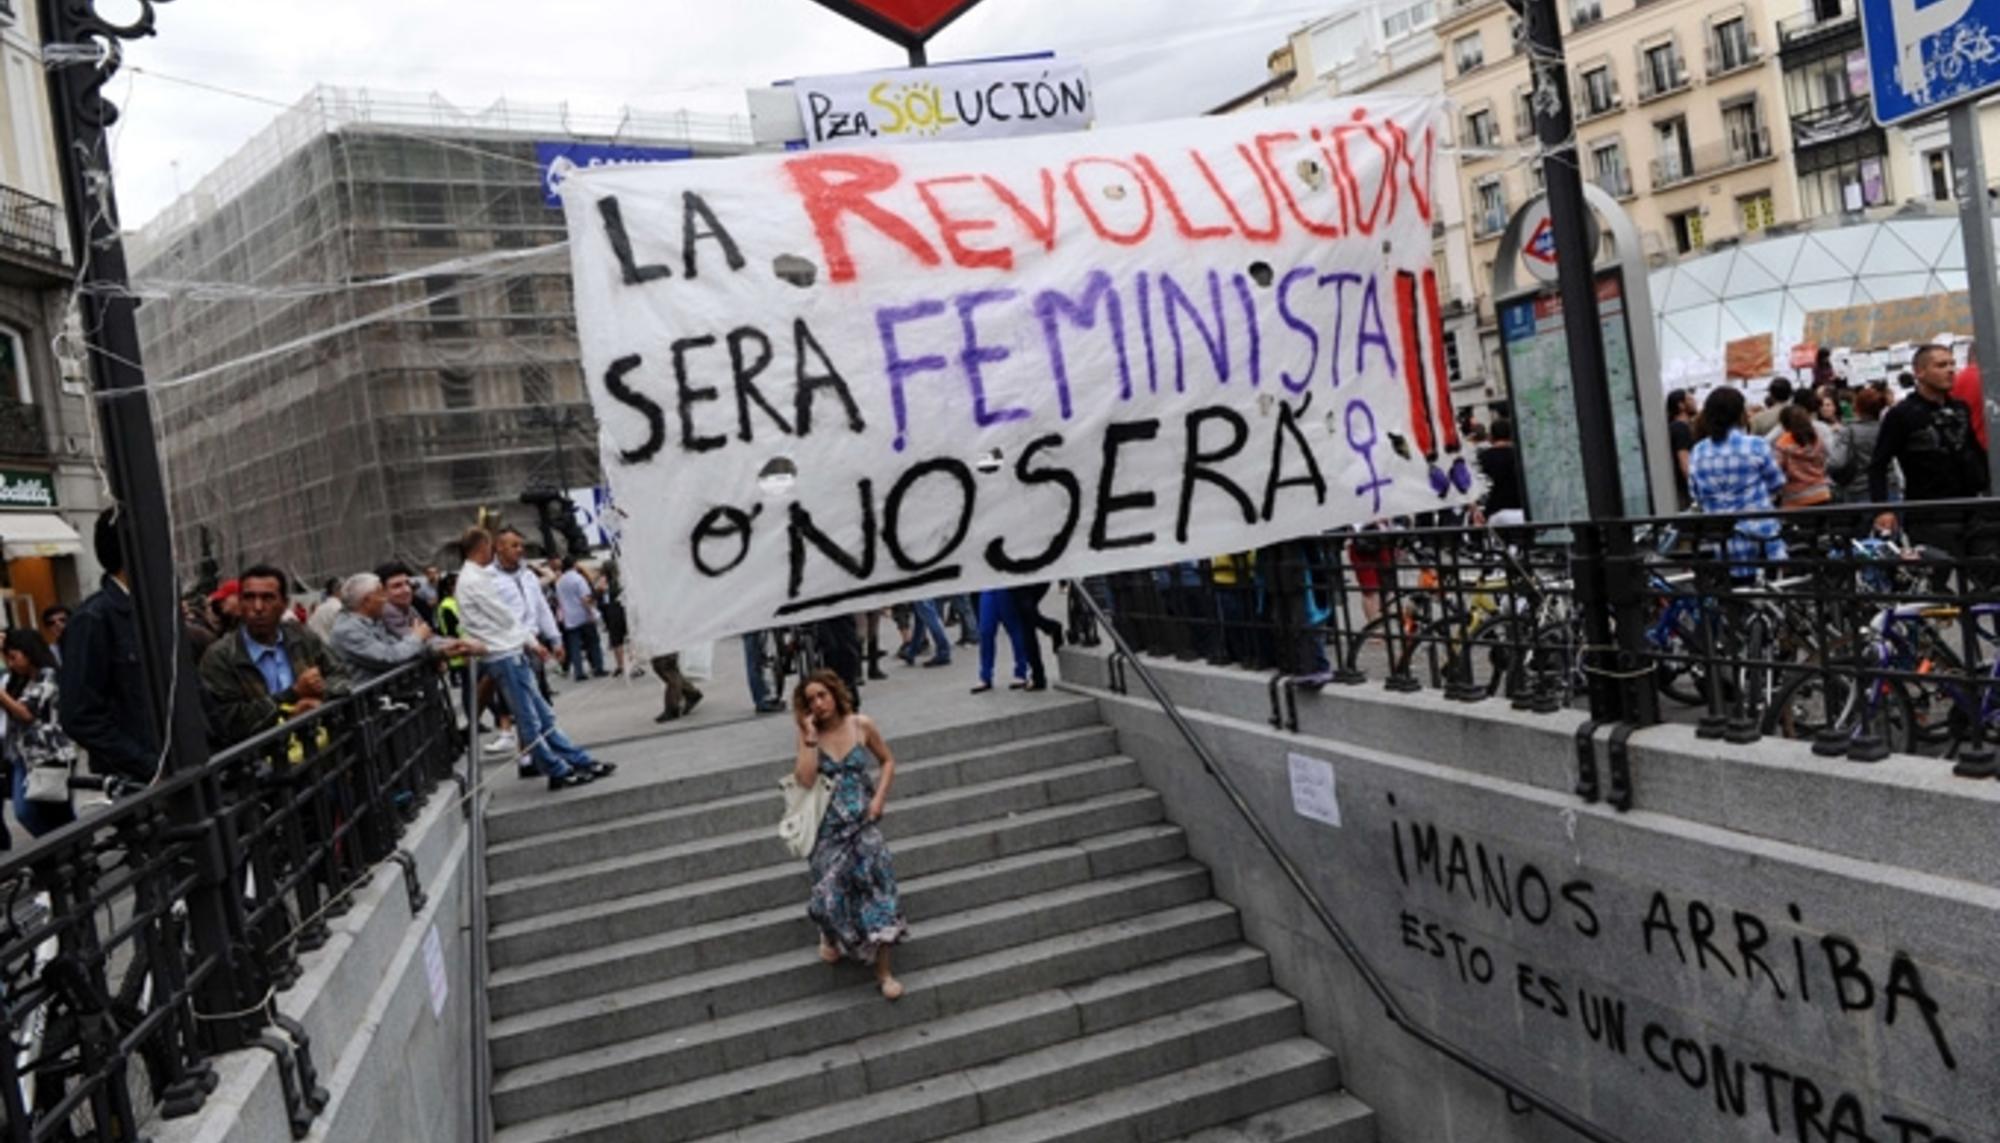 La revolución será feminista o no será. 15M en Sol